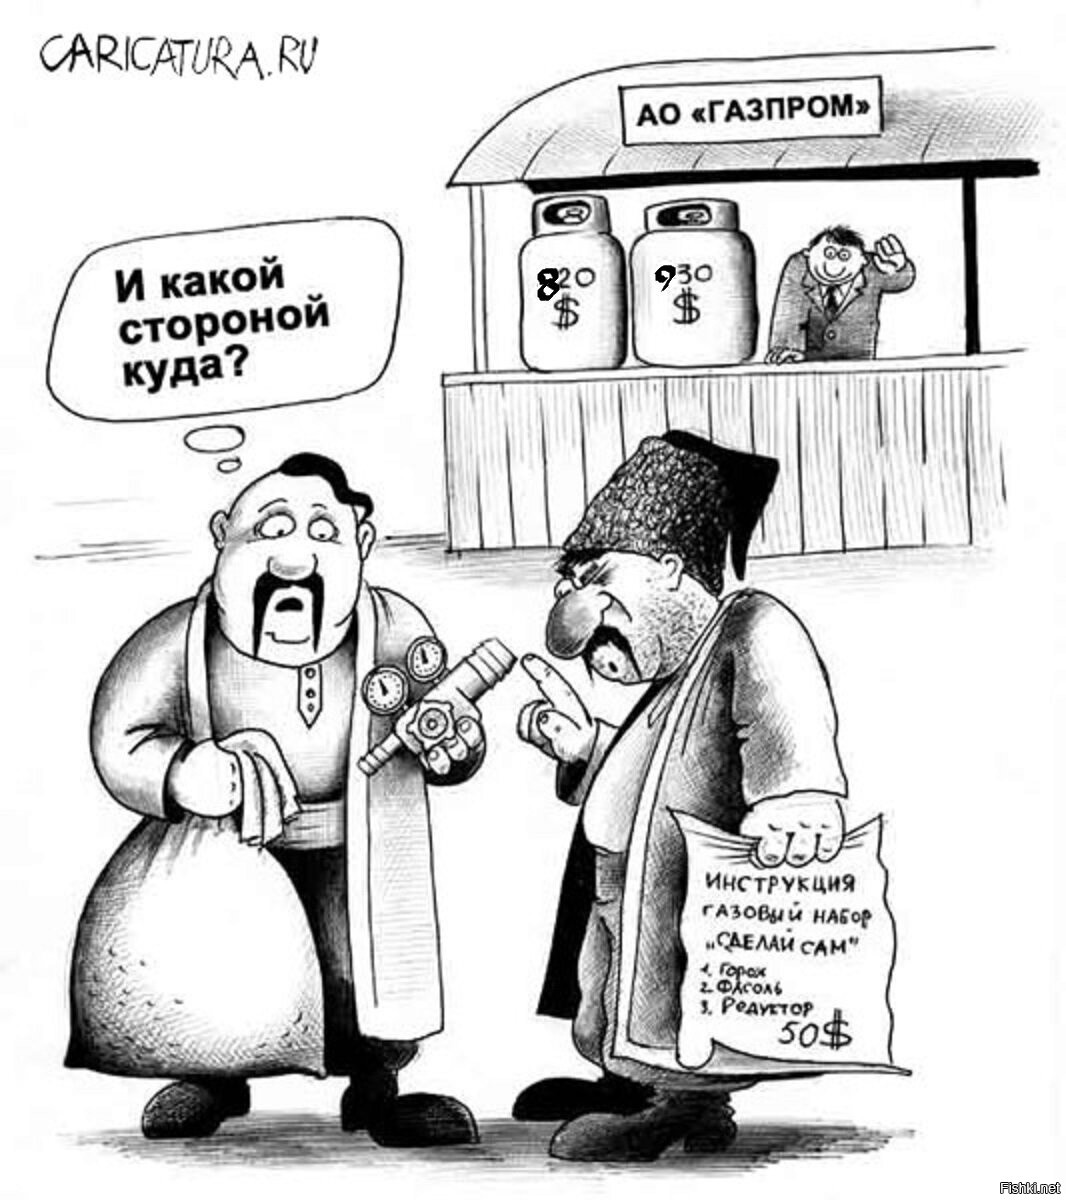 Украинцы шутки. Хохлы и ГАЗ карикатура. Приколы про украинцев. Карикатура. Карикатуры на украинскую тему.